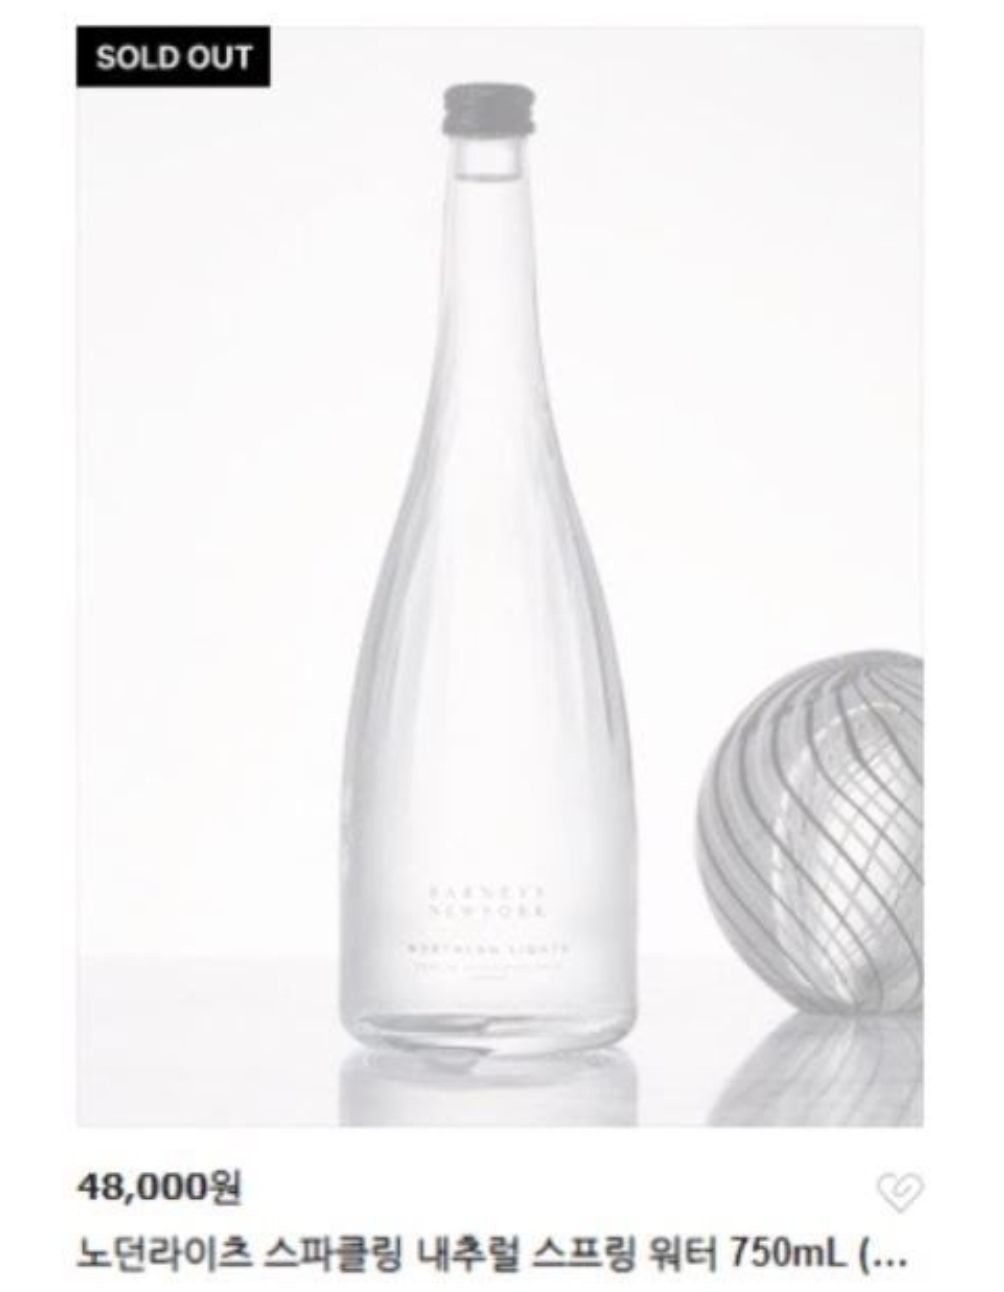 Botol air minum mewah yang dipakai V BTS turut terjual habis